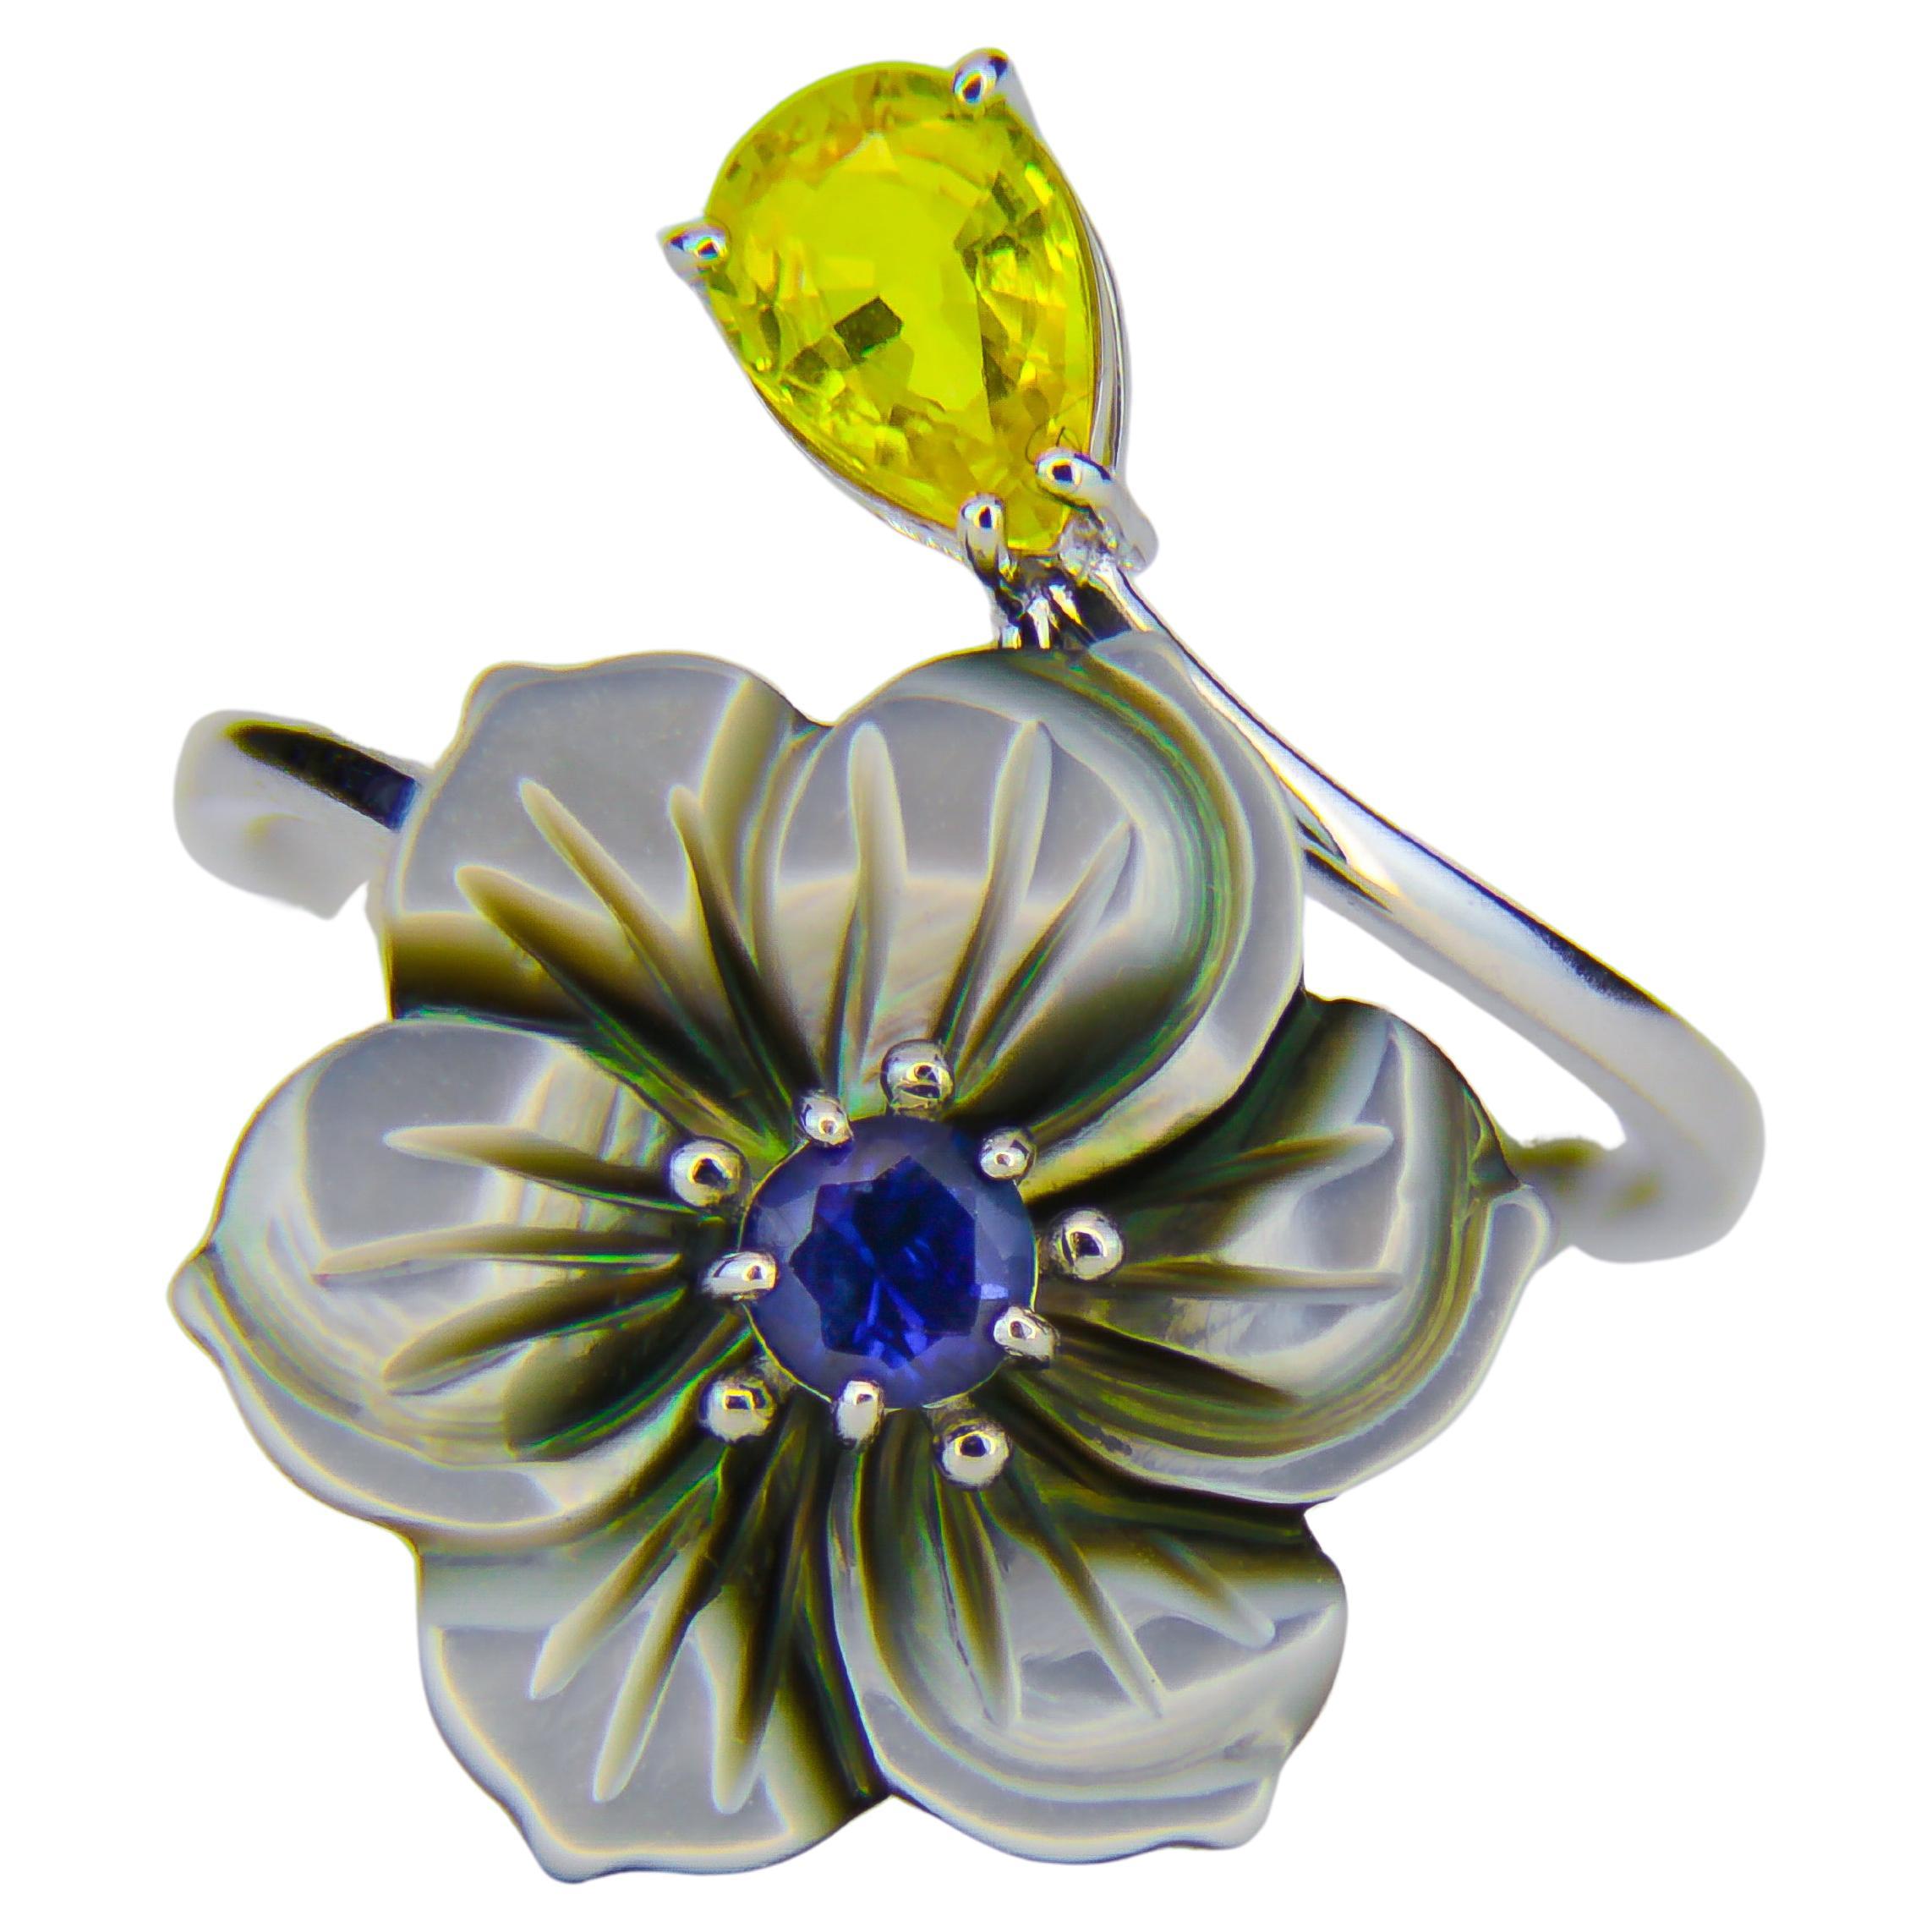 Carved Flower 14k ring with gemstones